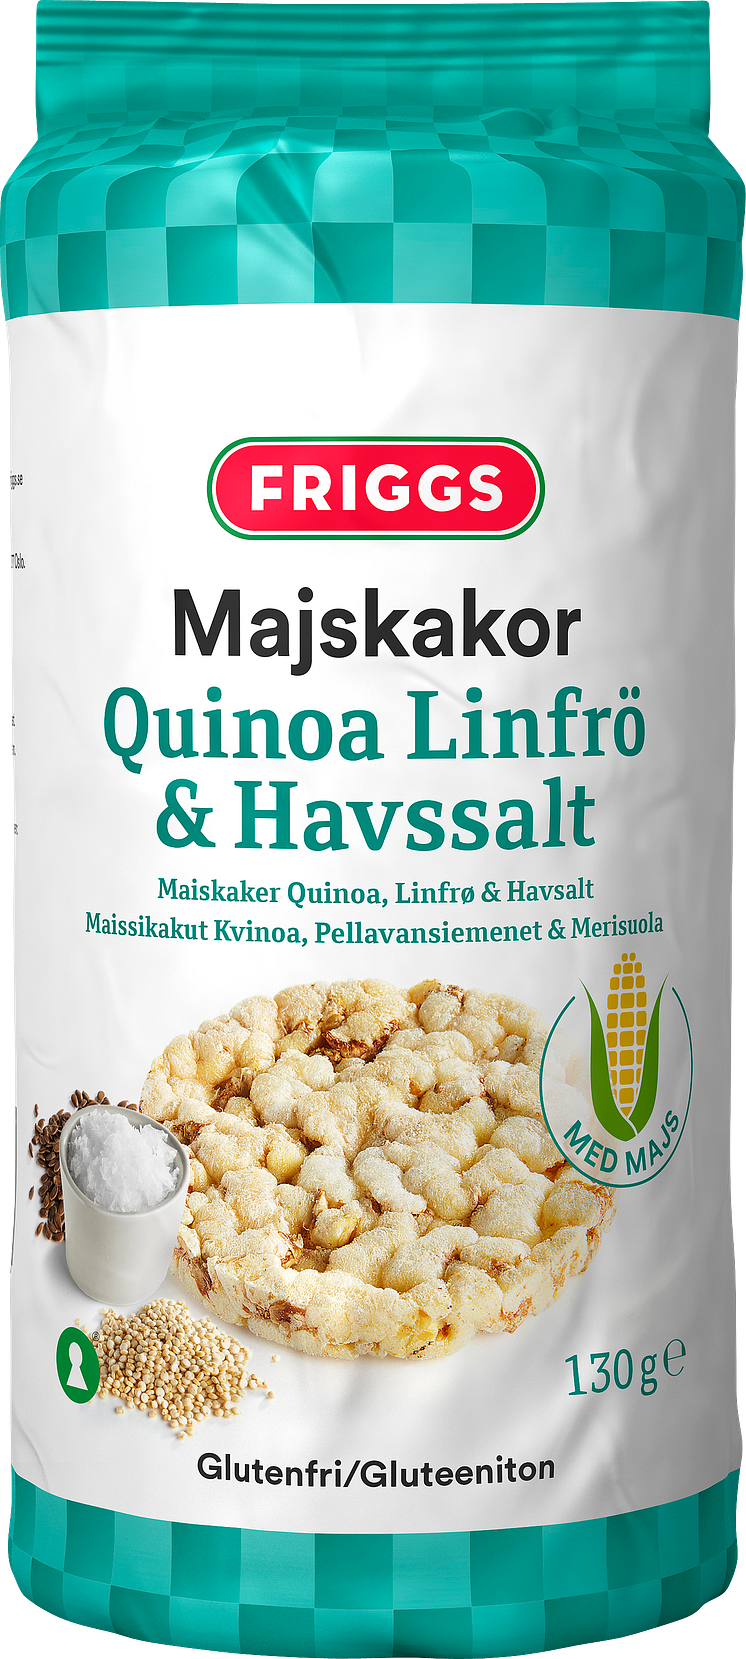 Majskakor Quinoa Linfrö & Havssalt